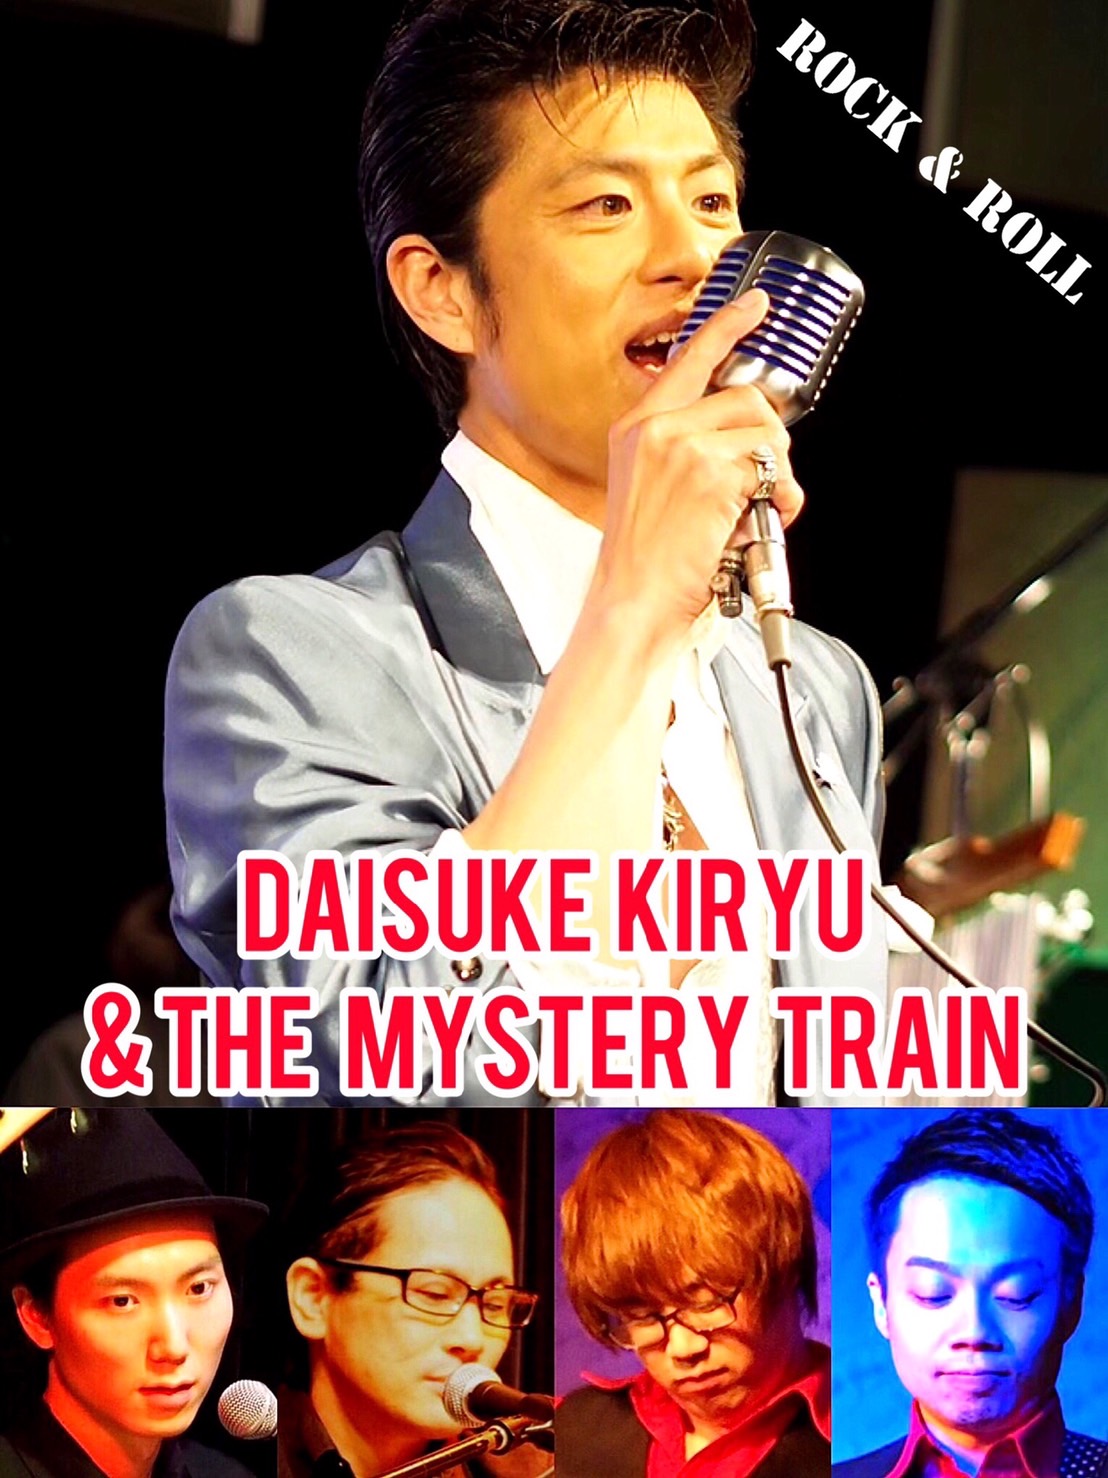 桐生大輔&The Mystery train 『オールディーズナイト』